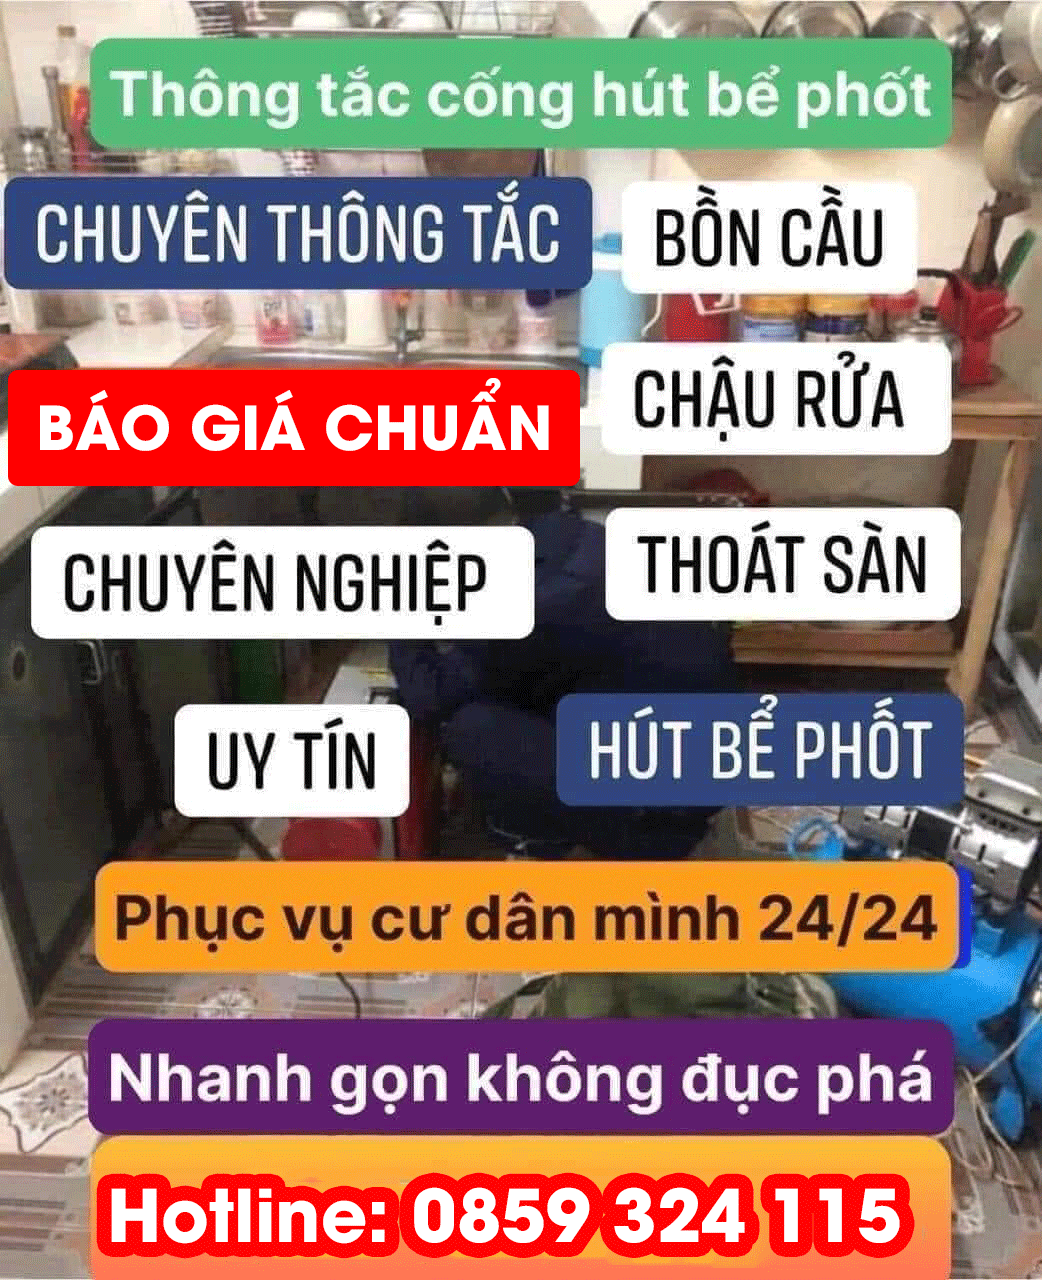 Dịch vụ thông tắc cống ở Hà Nội